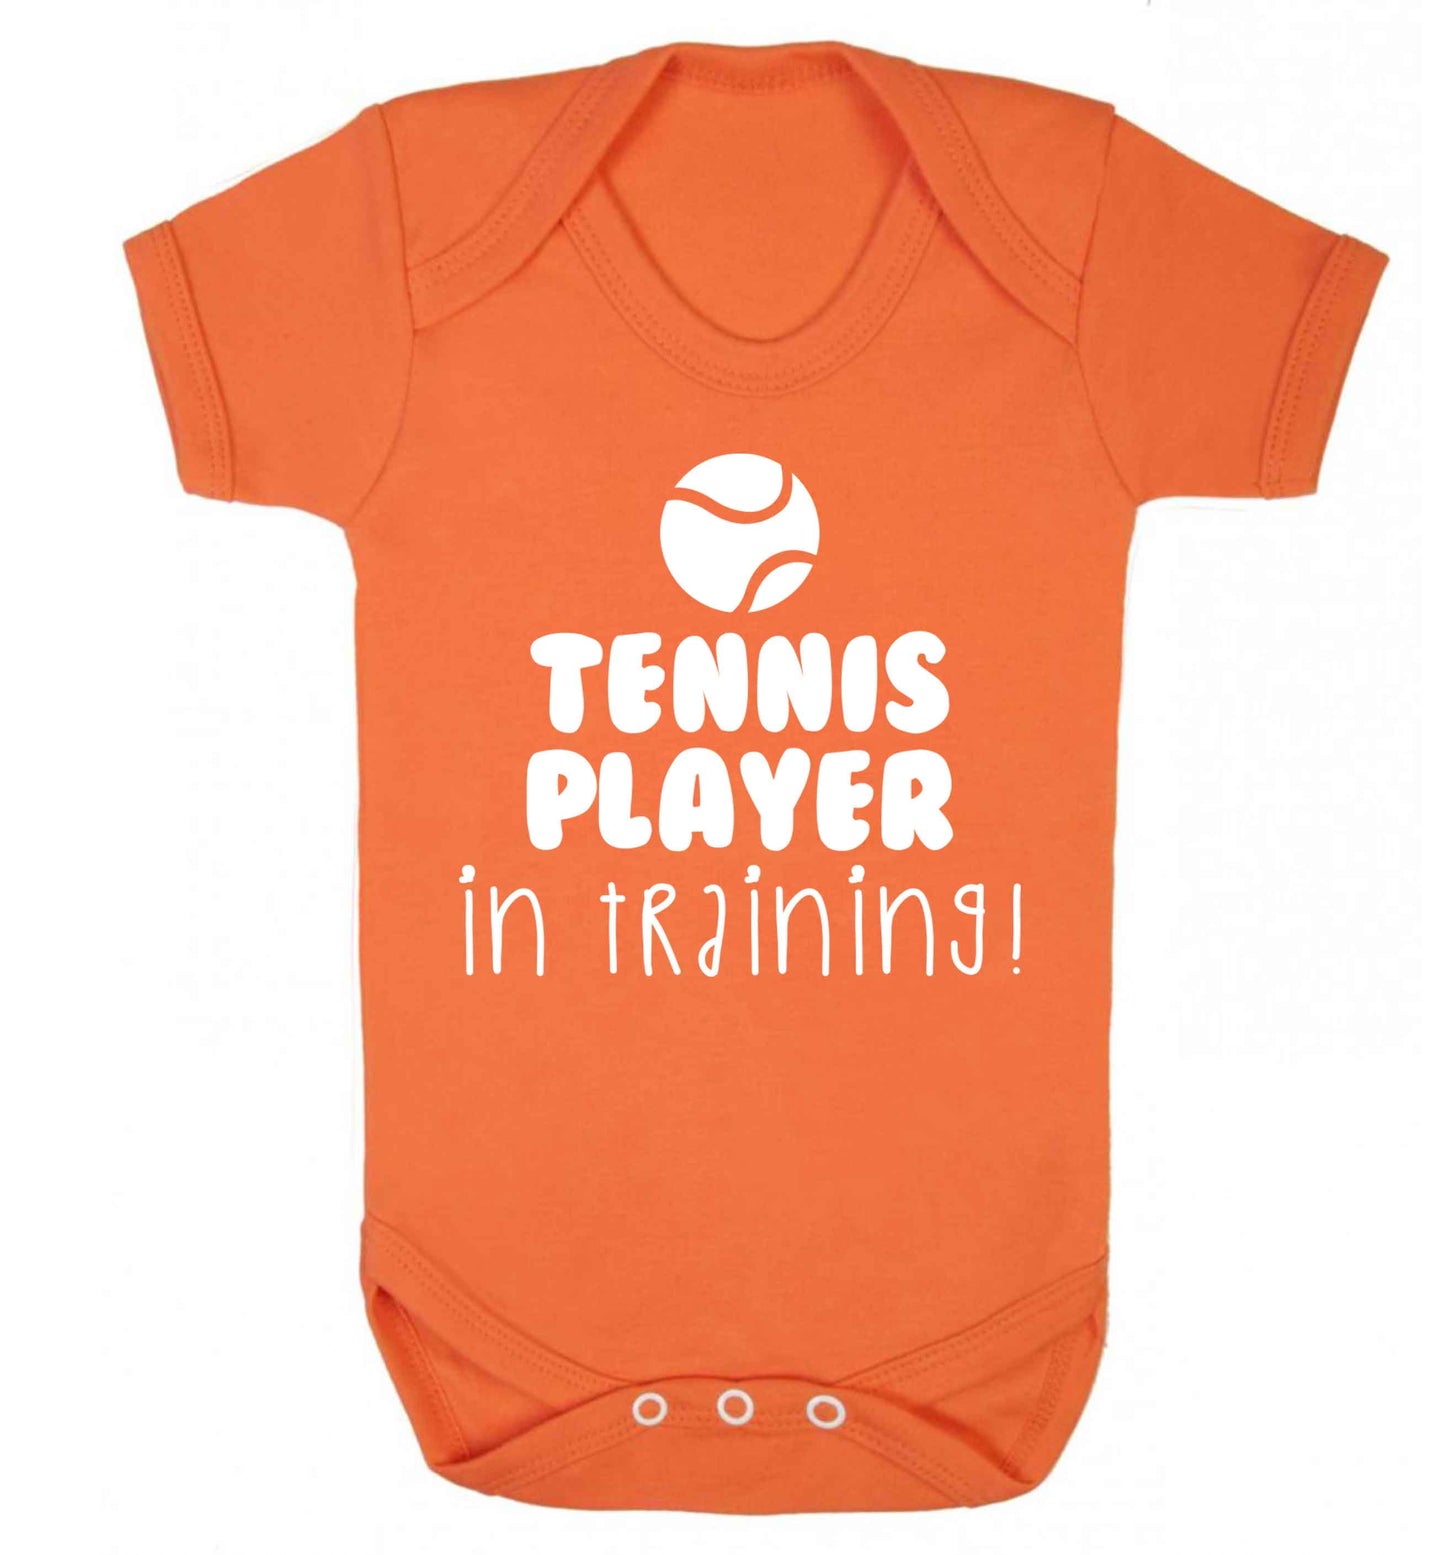 Tennis player in training Baby Vest orange 18-24 months